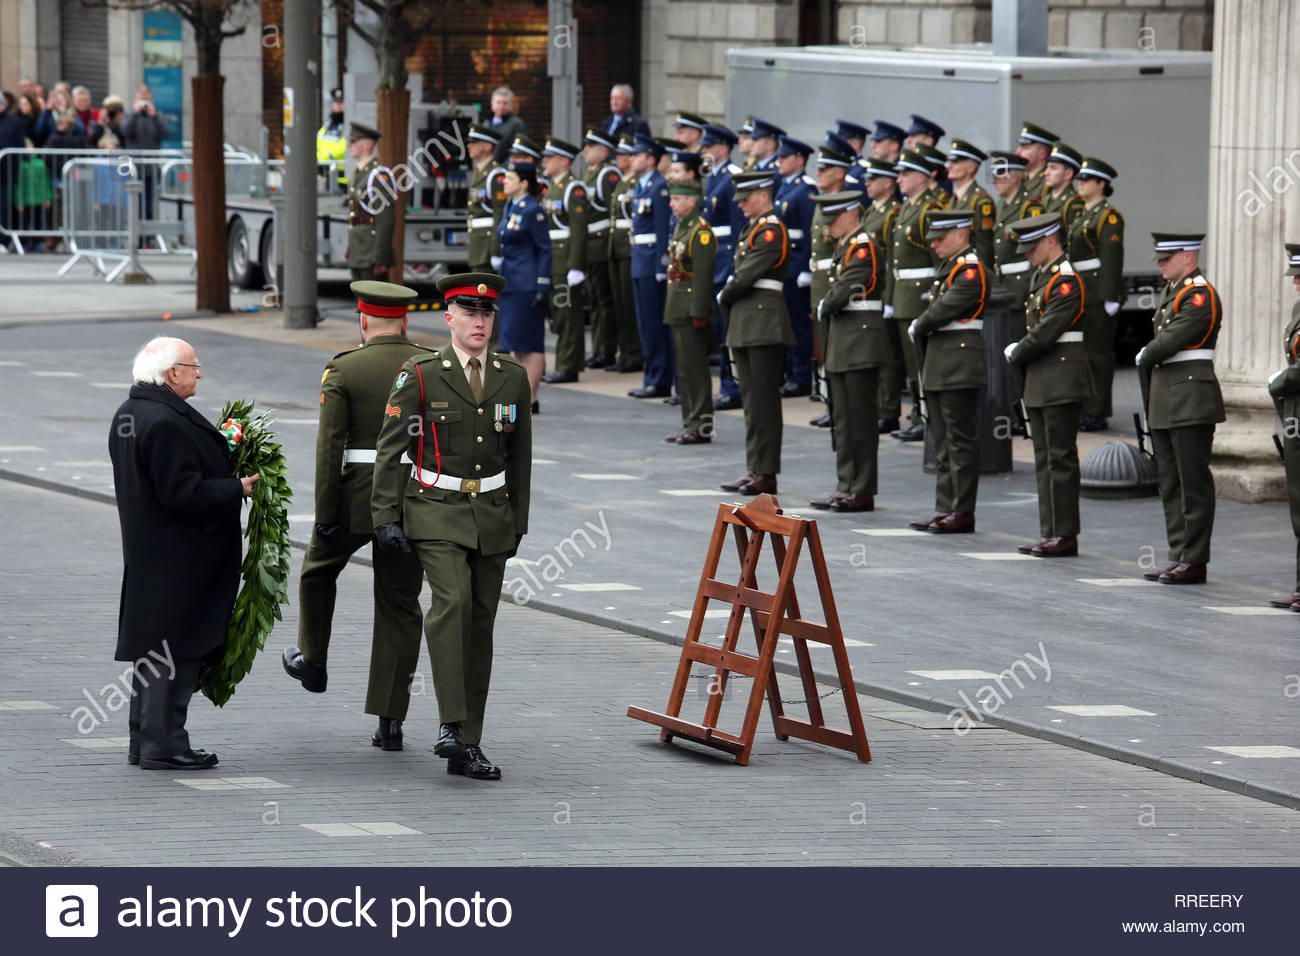 Michael D. Higgins, président de l'Irlande, se prépare à déposer une couronne de fleurs en face de l'objet Stratégie de groupe, à Dublin, à une cérémonie de commémoration, pour le 1916 à la hausse. Banque D'Images